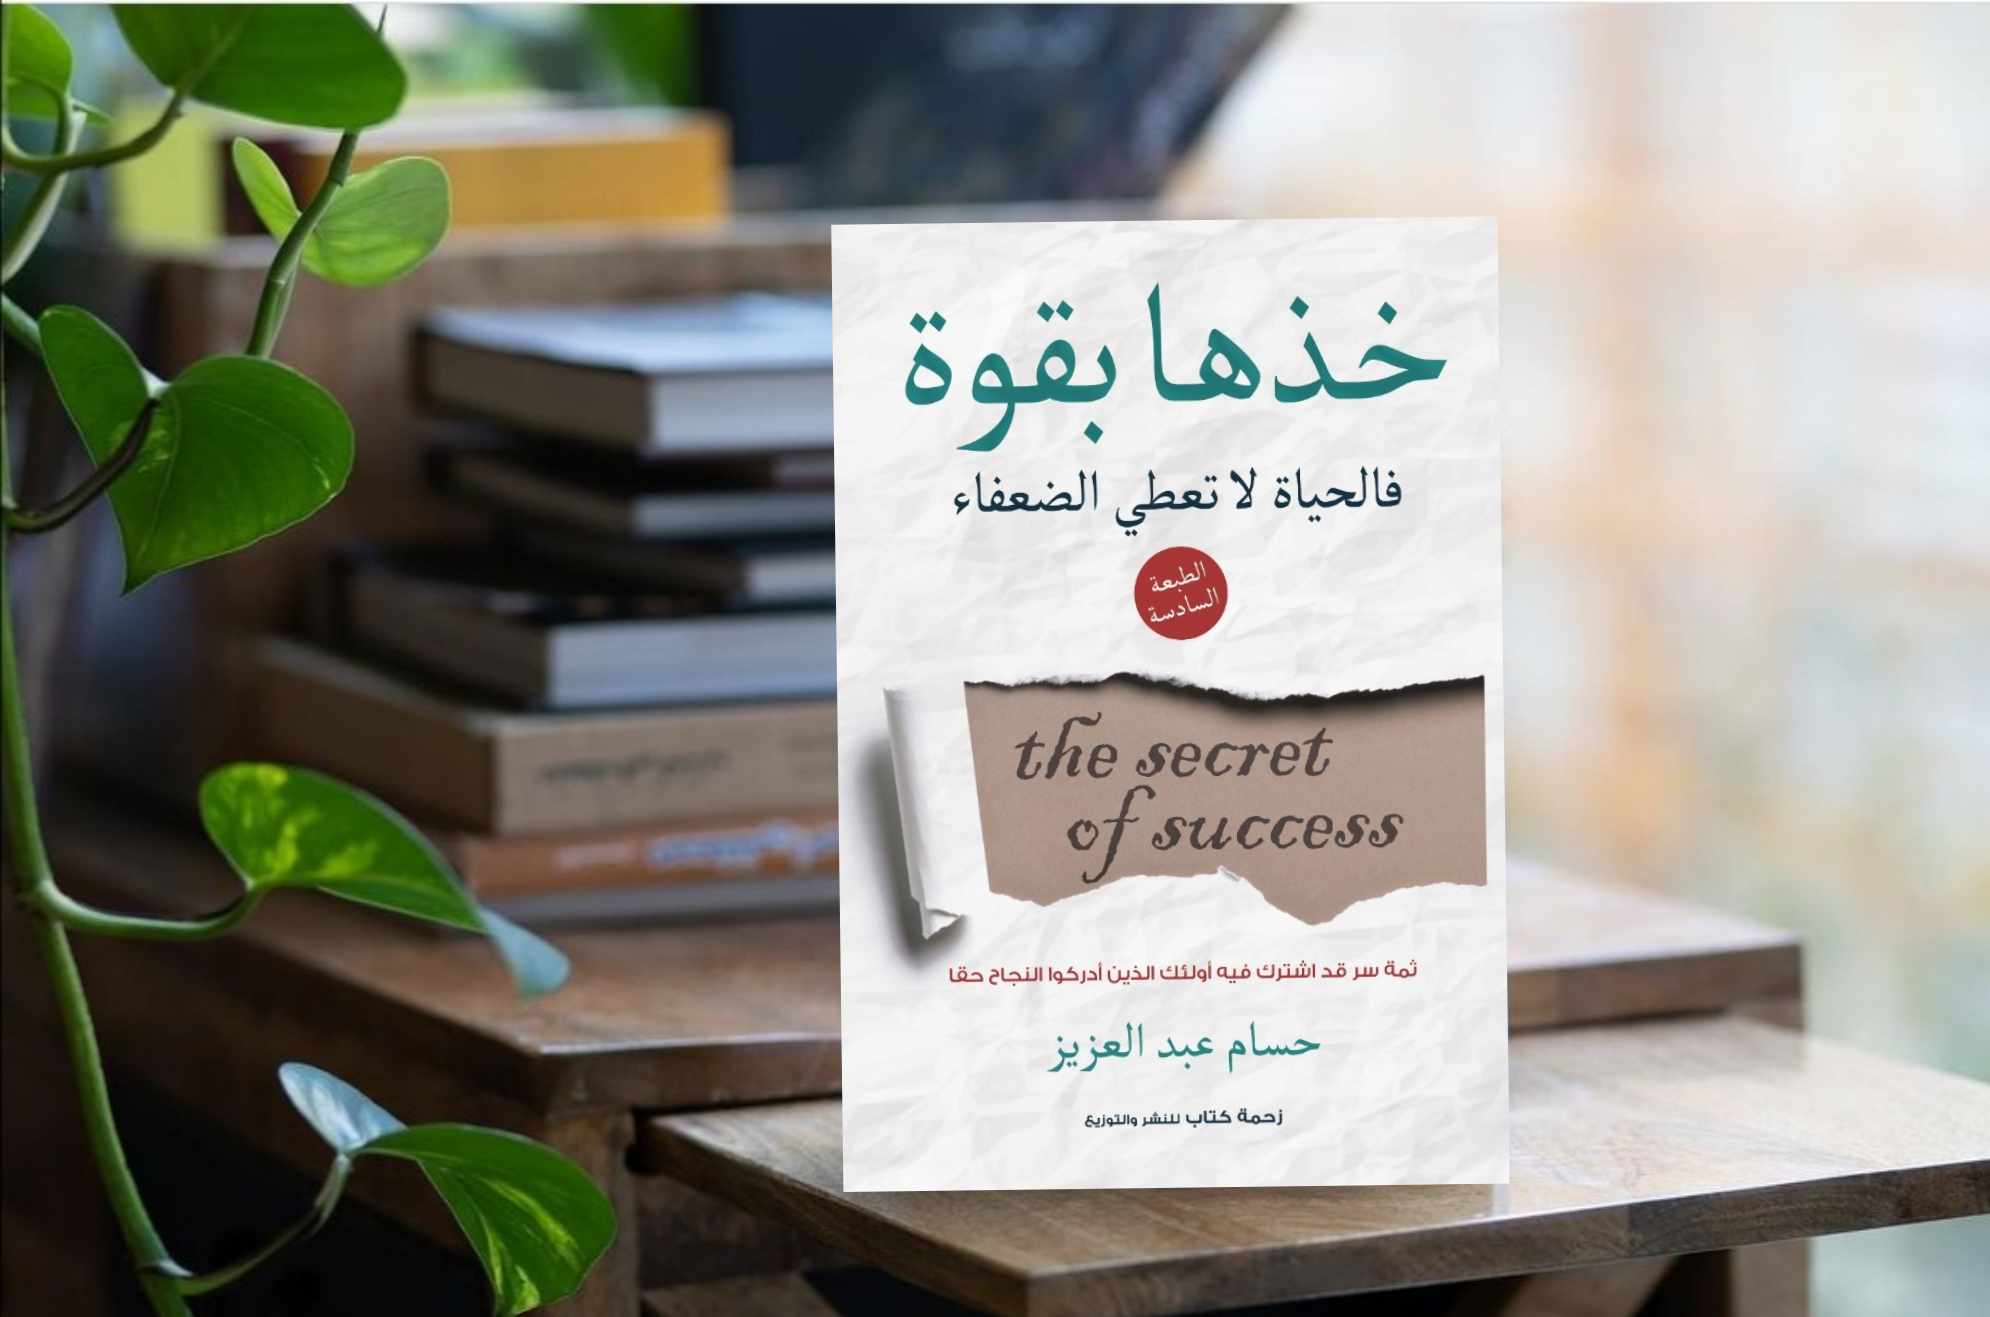  كتاب خذها بقوة للمهندس حسام عبد العزيز (1)